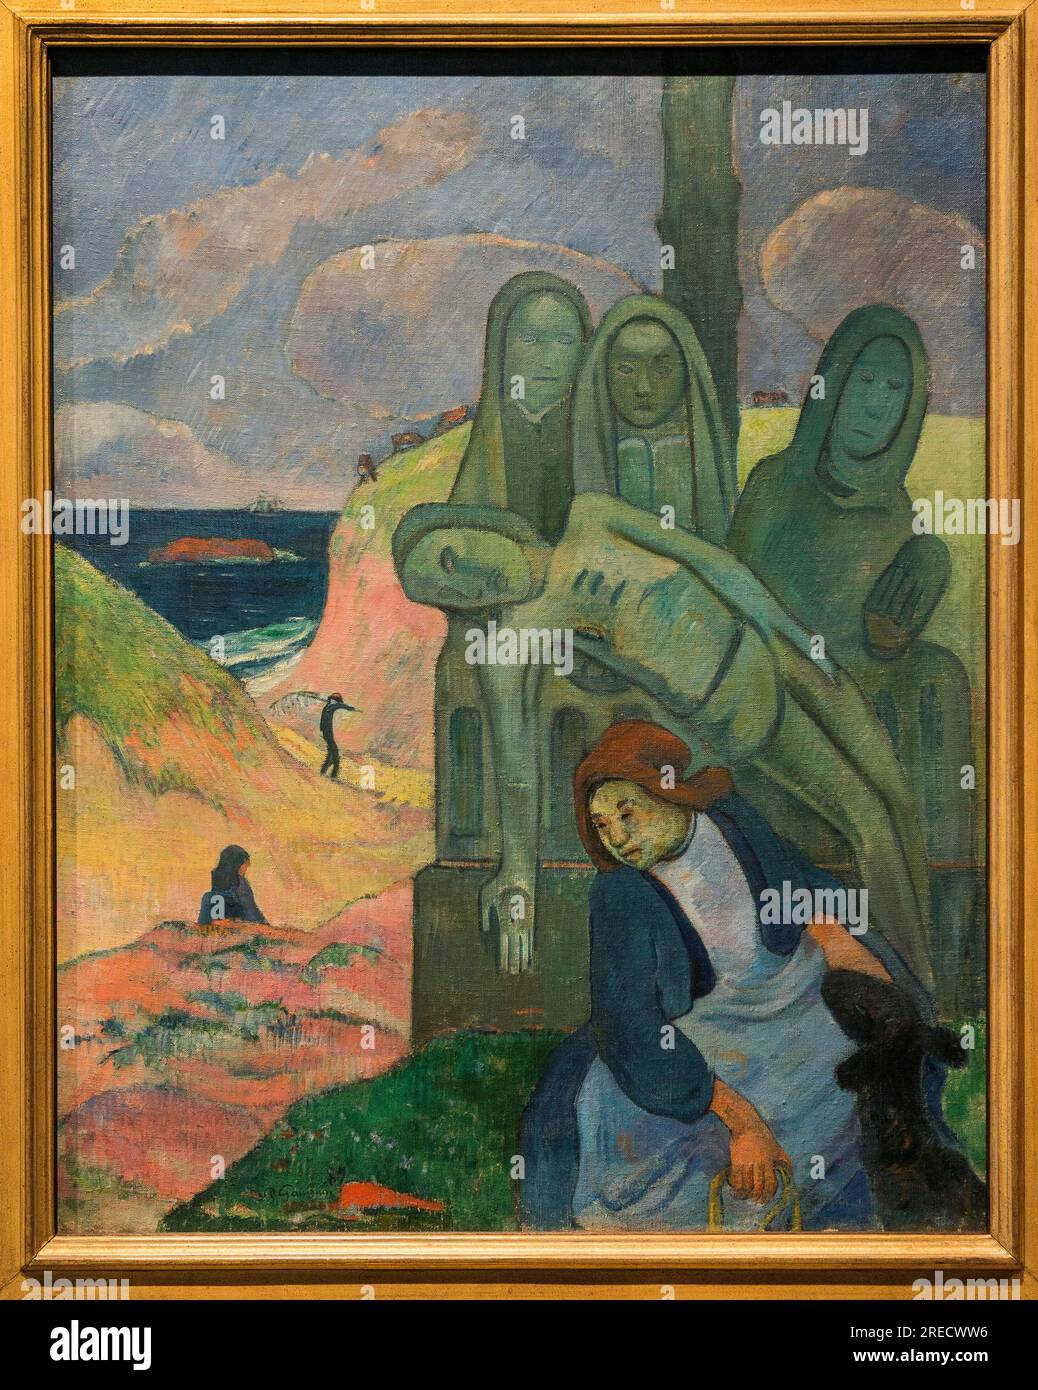 The Green Christ - Paul Gauguin (1848-1903) - 92 cm x 73 cm - Musees royaux des beaux-arts de Belgique -  Postimpressionnisme - Calvaire breton, 1889 by Paul Gauguin (Le christ vert) Stock Photo